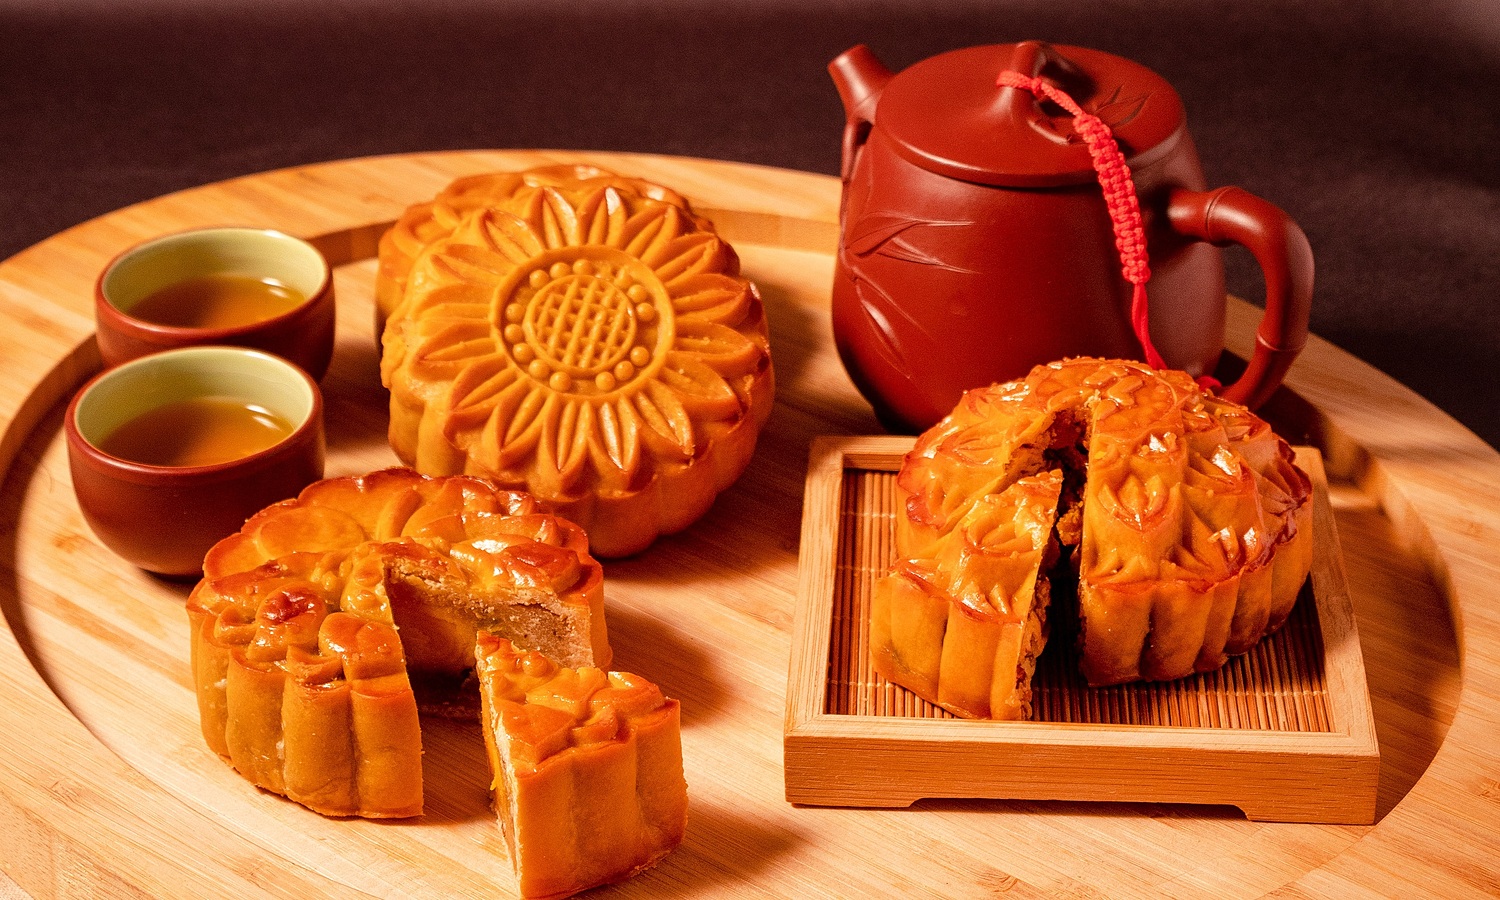 Các set tự làm bánh trung thu giá chỉ từ 99.000 đồng: Loại truyền thống, rau câu lẫn bánh chay đều có đủ